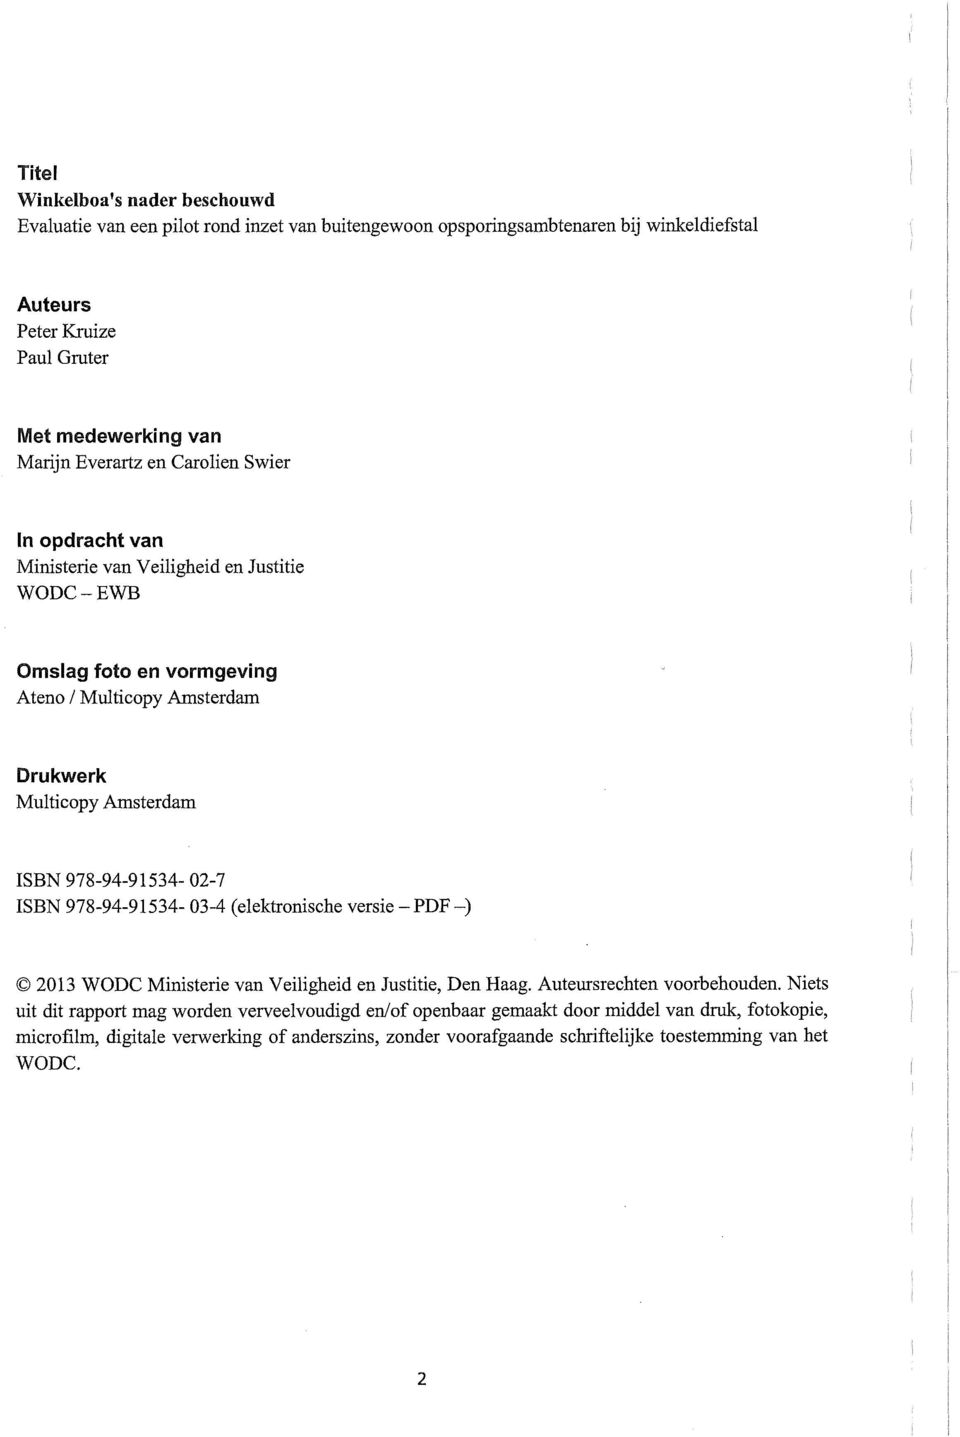 ISBN 978-94-91534-02-7 ISBN 978-94-91534-03-4 (elektronische versie - PDF -) 2013 WODC Ministerie van Veiligheid en Justitie, Den Haag. Auteursrechten voorbehouden.